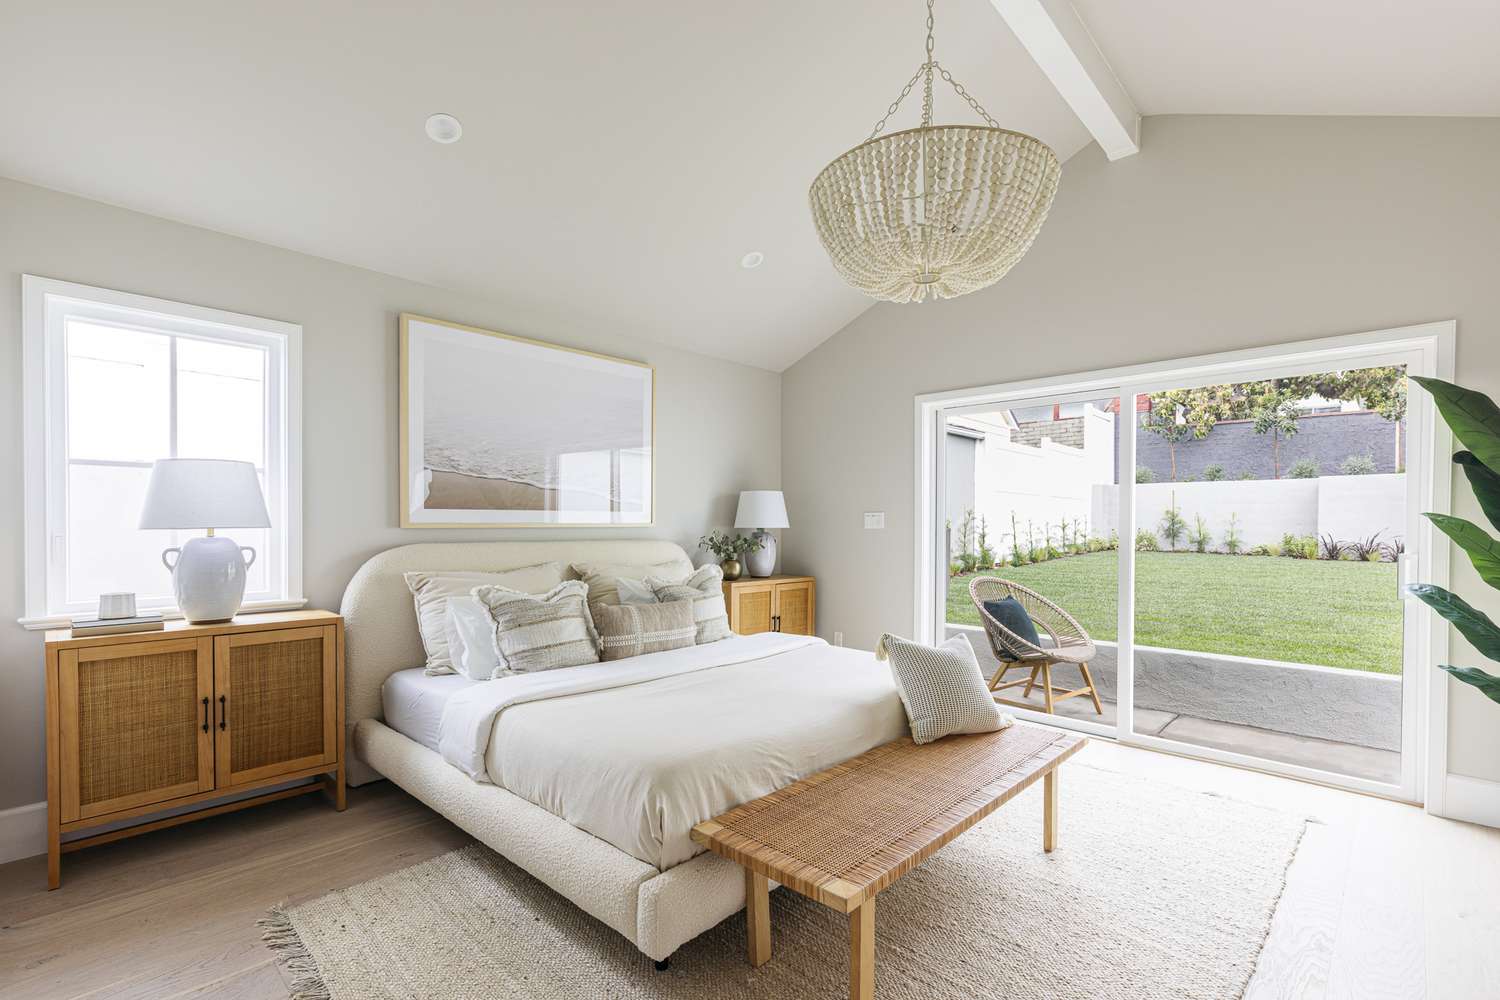 Dormitorio tranquilo con paredes pintadas de gris claro y una gran ventana que da al patio trasero